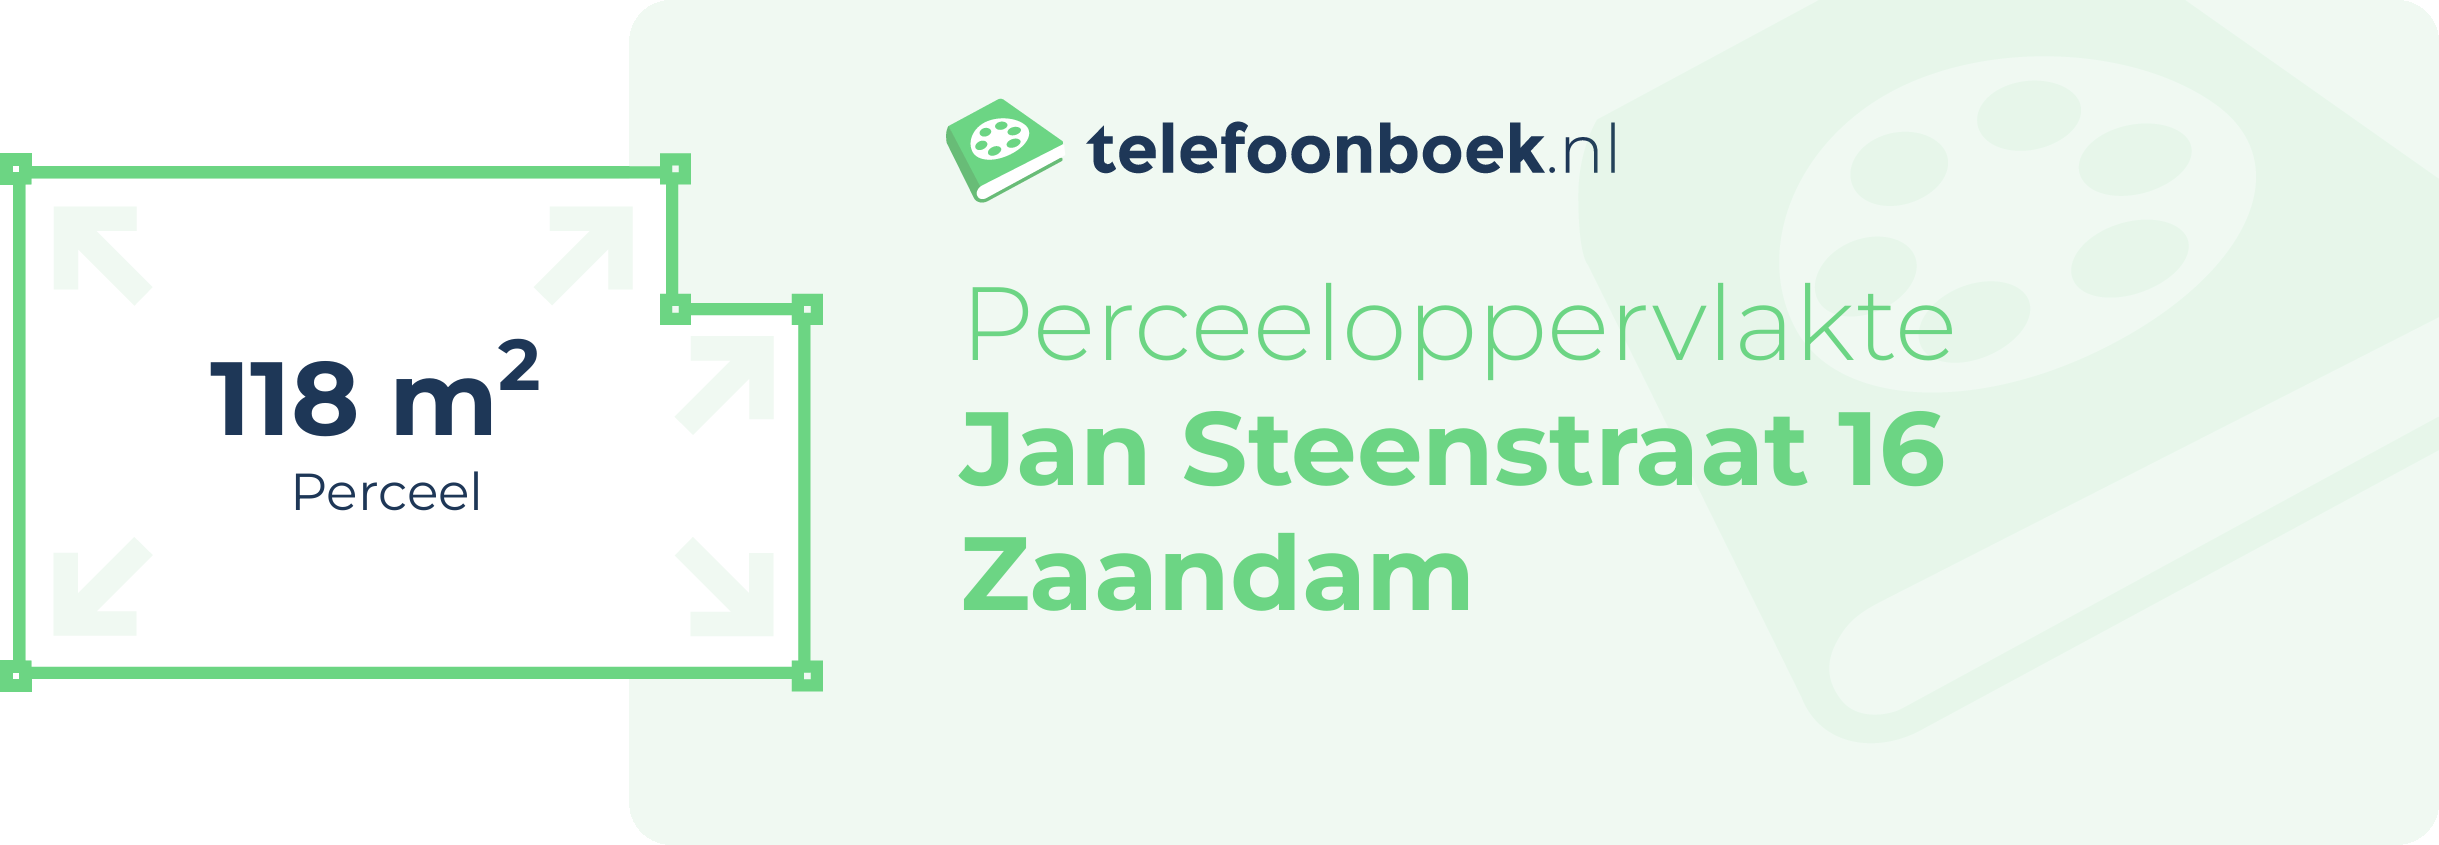 Perceeloppervlakte Jan Steenstraat 16 Zaandam